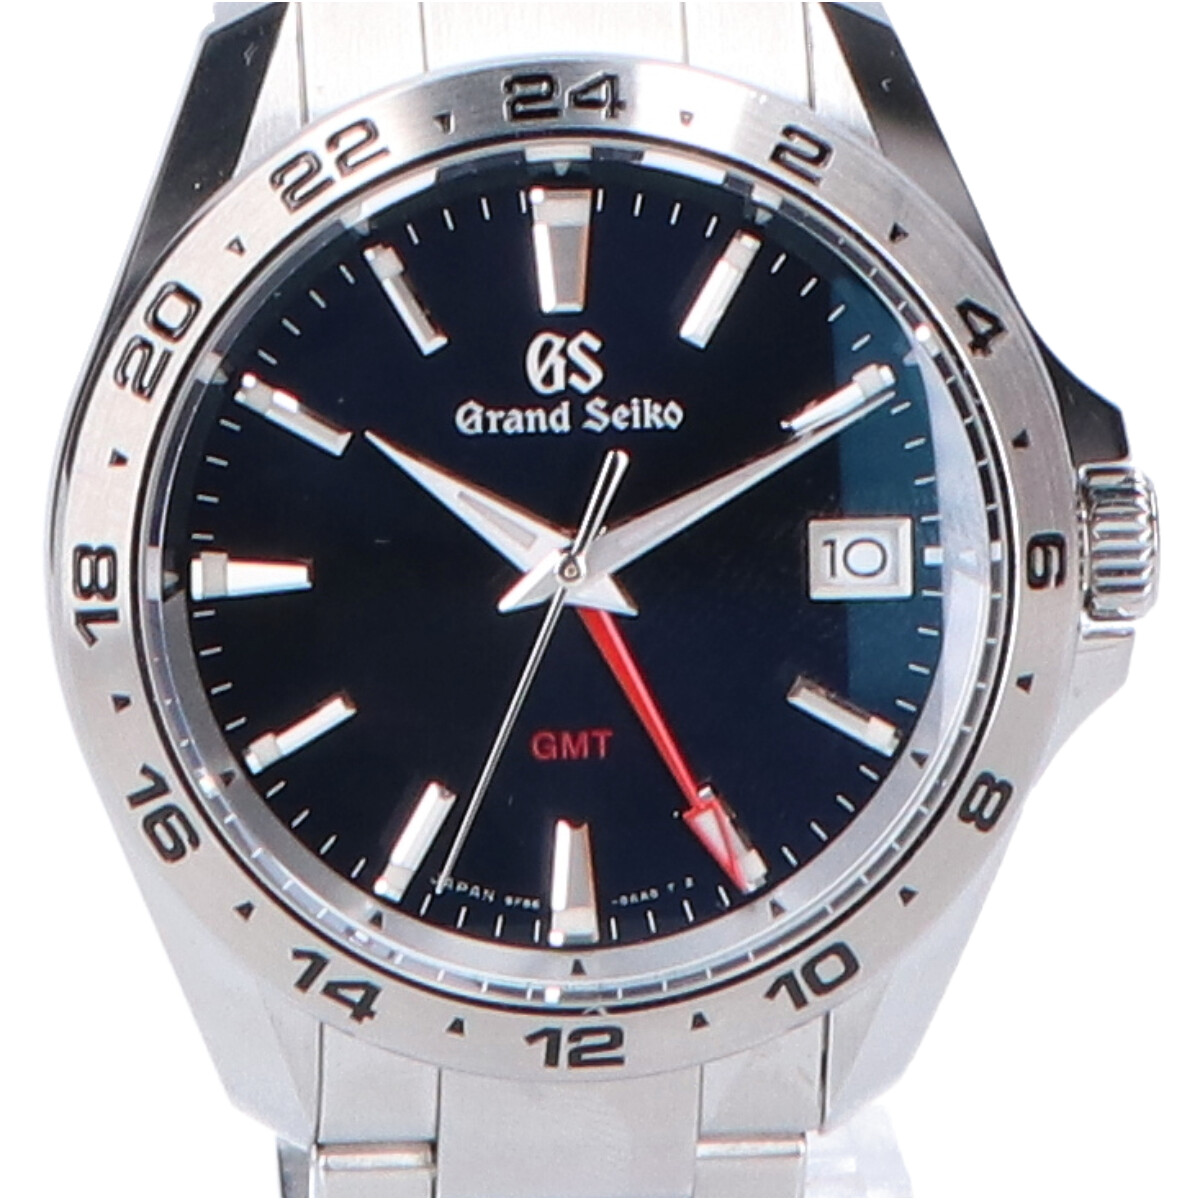 グランドセイコーのSBGN003 スポーツコレクションGMTクォーツ腕時計の買取実績です。